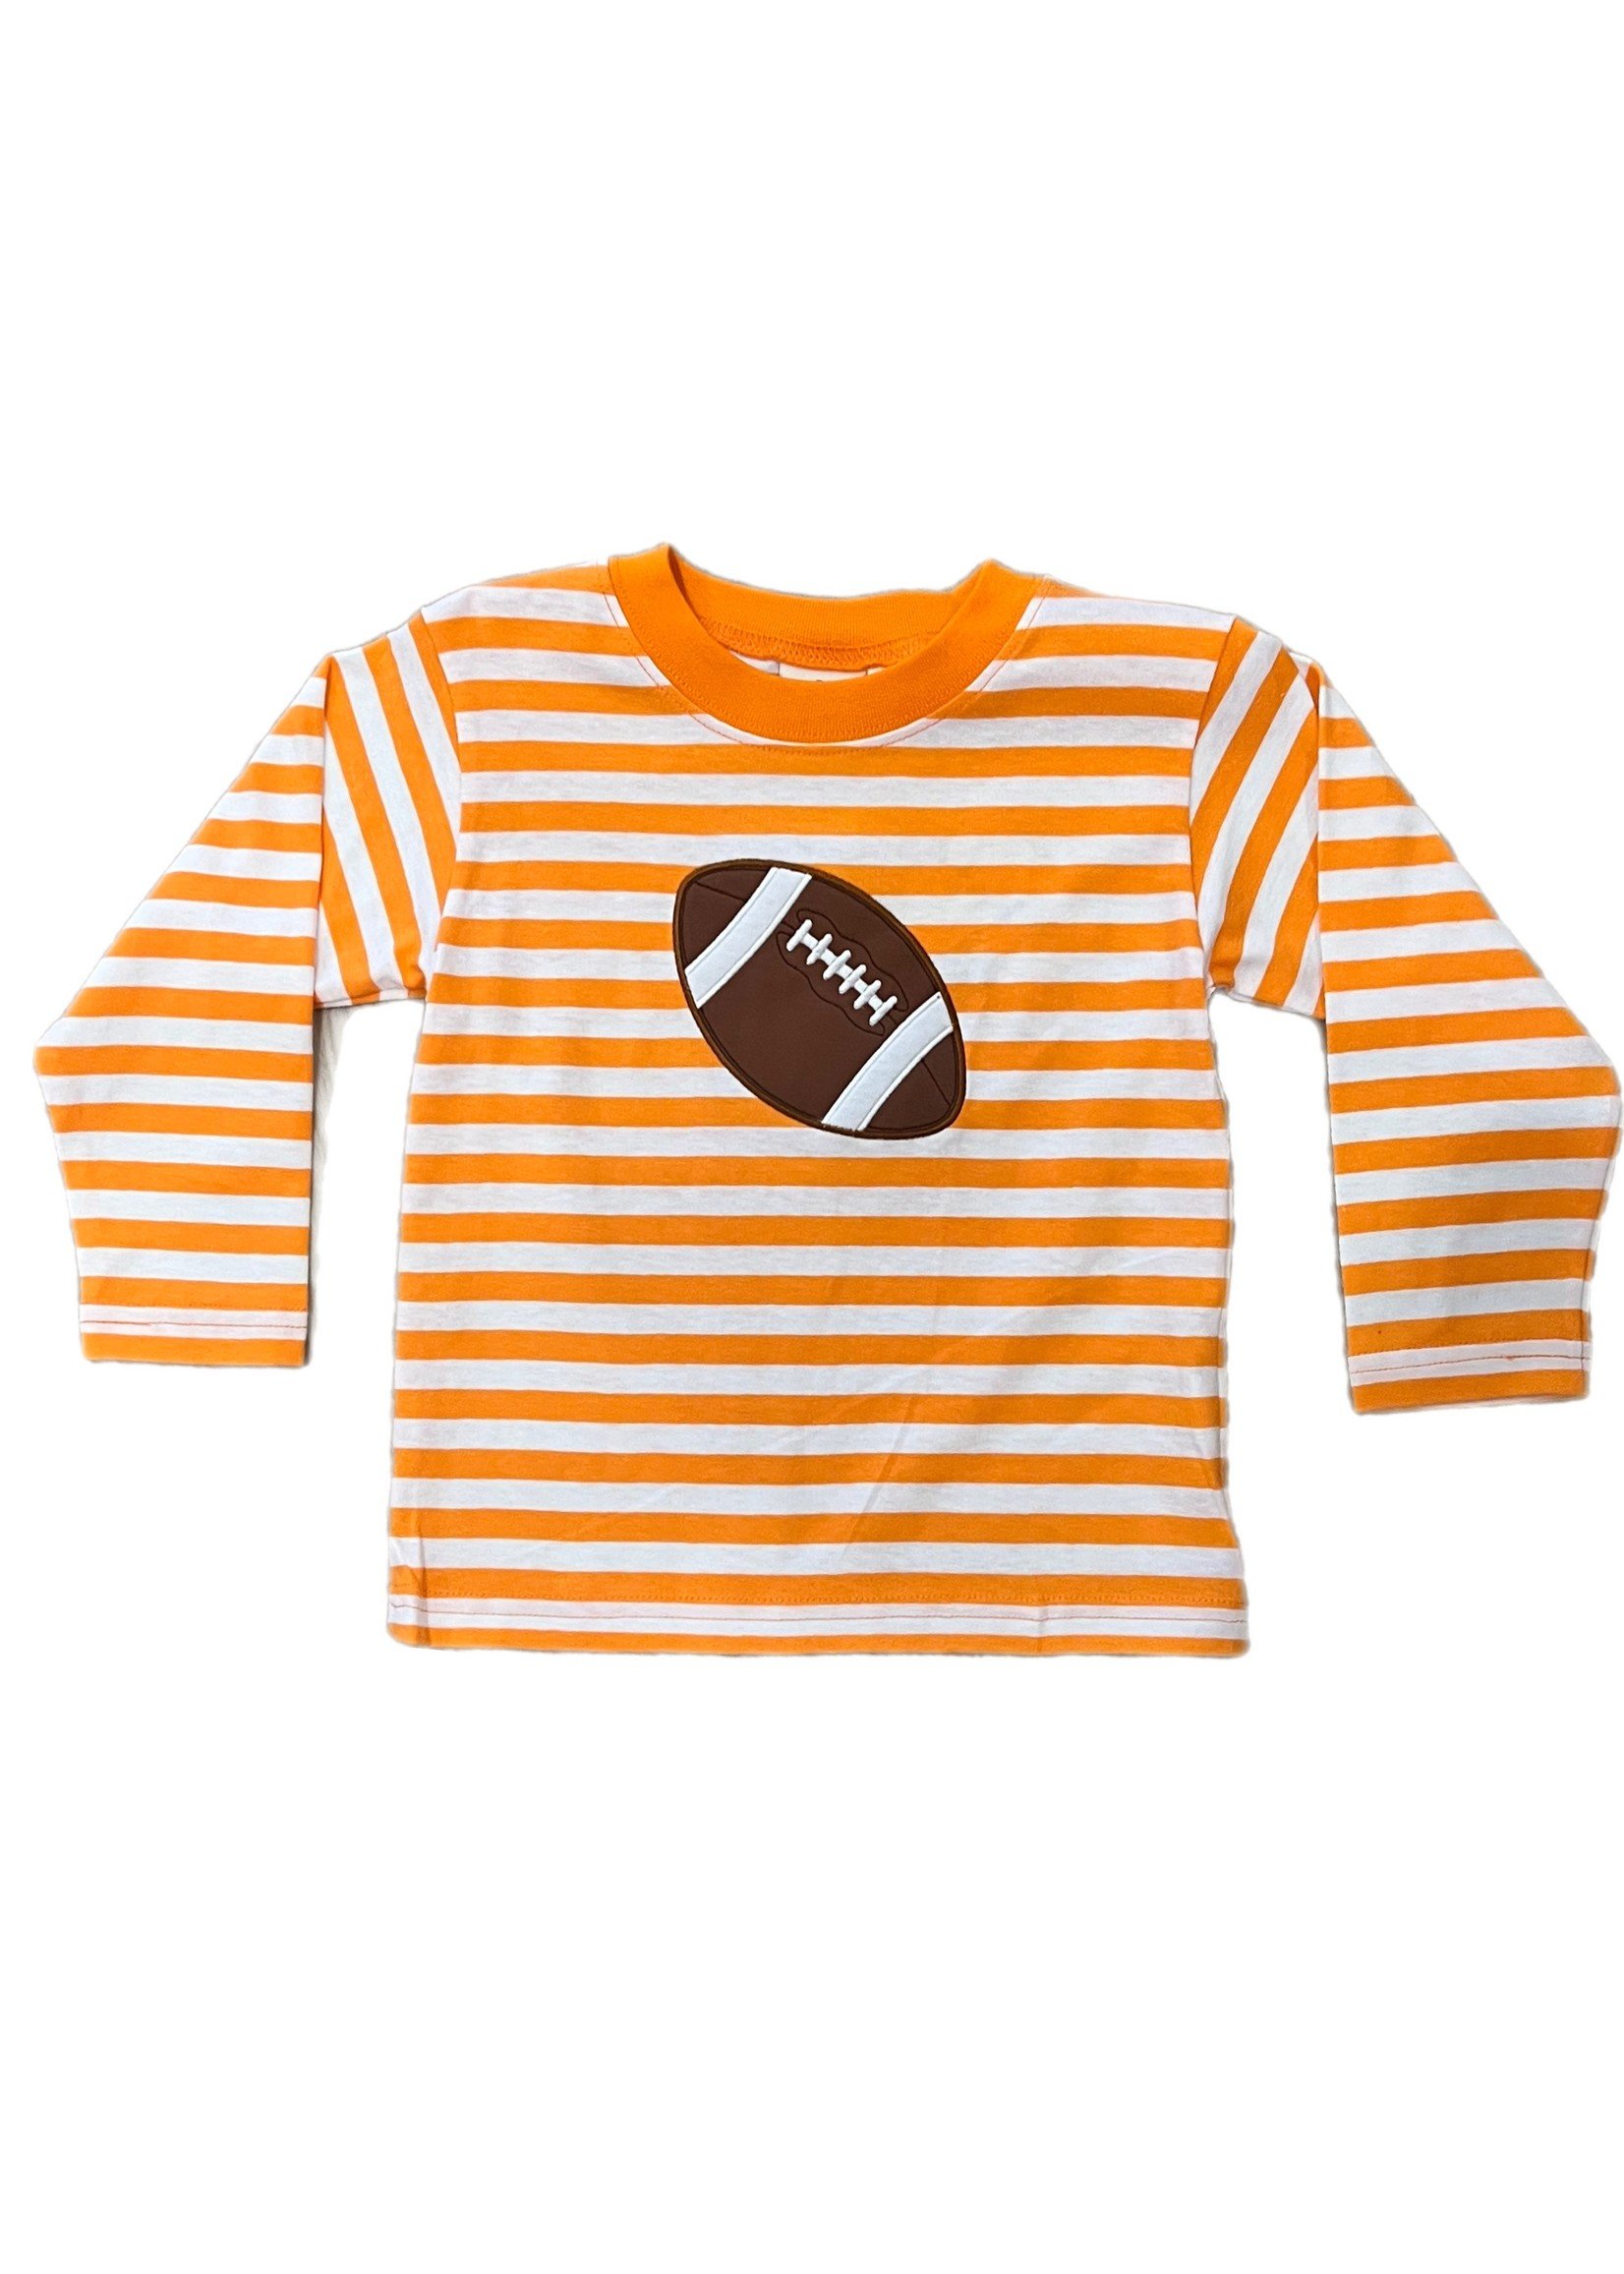 Luigi Kids Orange Stripe Football LS Tee